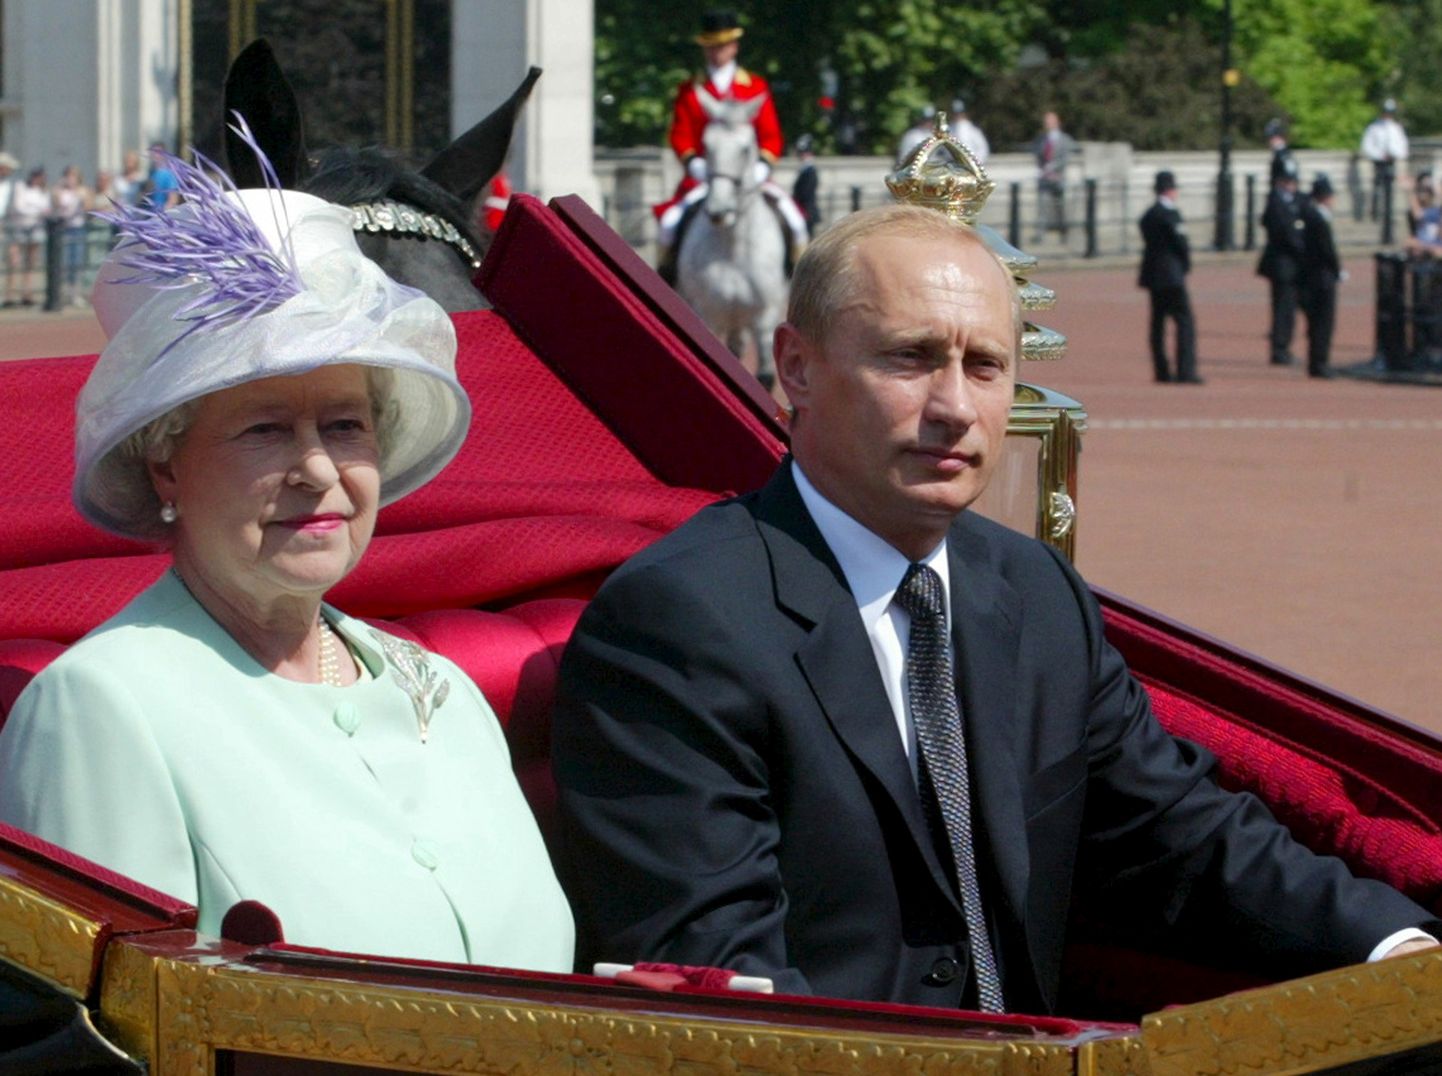 Briti kuninganna Elizabeth II ja Venemaa president Vladimir Putin sõitmas 24. juunil 2003 Londonis tõllas. Putin oli siis visiidil Suurbritannias